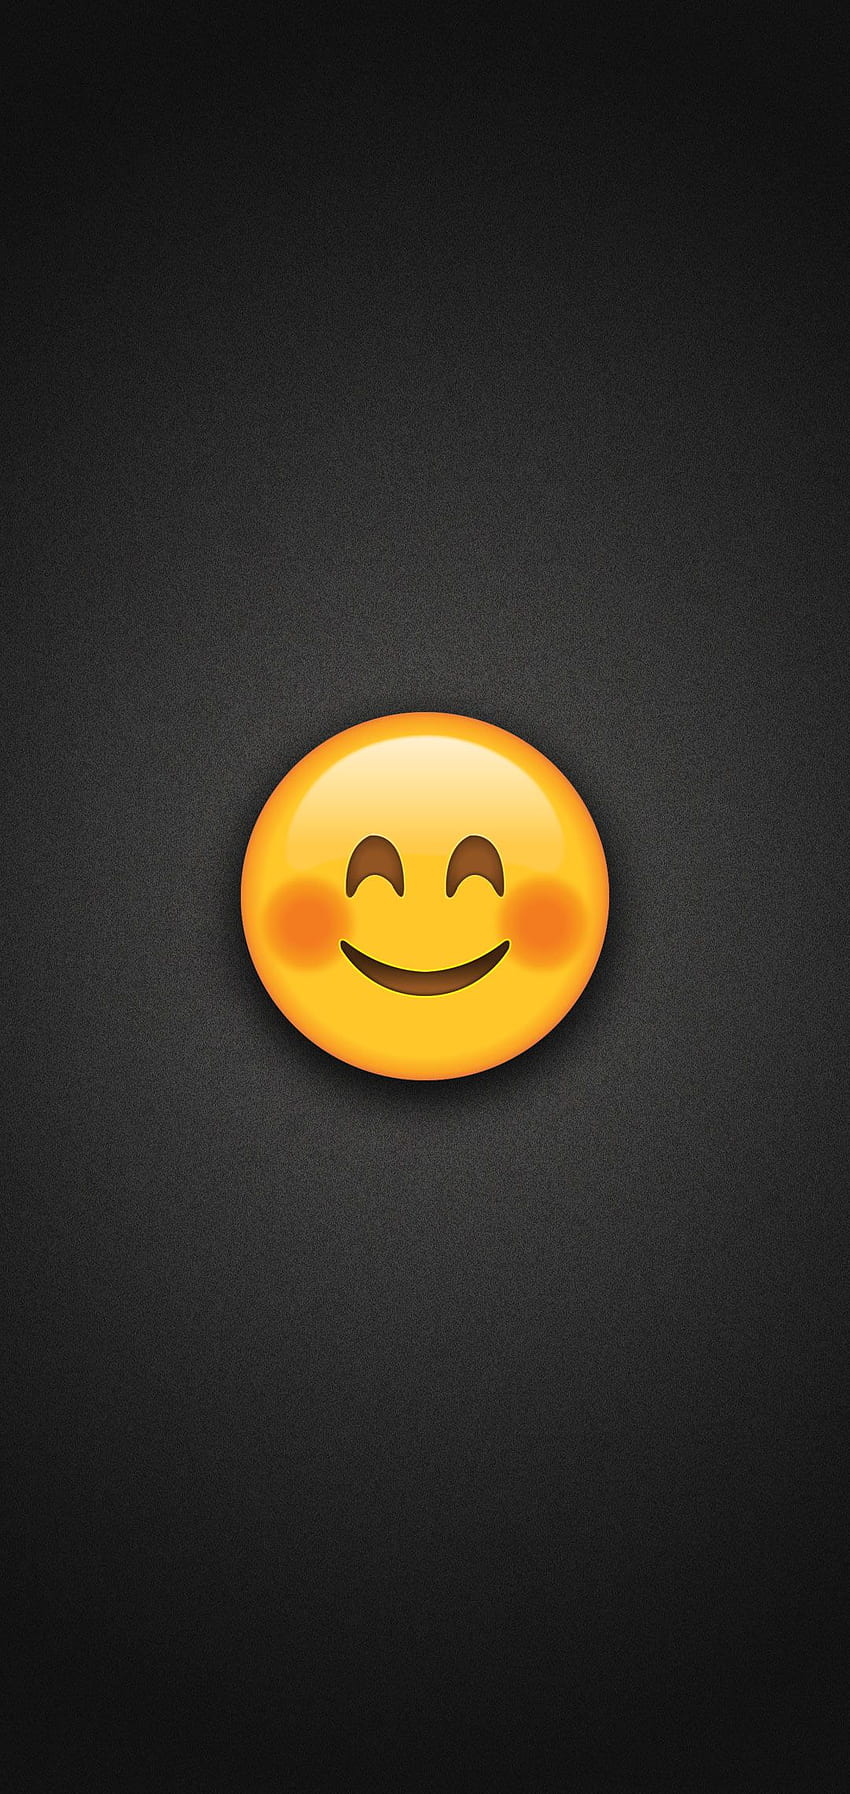 Hình ảnh các Smiling Face Emoji sẽ khiến bất cứ ai cũng cảm thấy vui vẻ và thoải mái. Bộ sưu tập này còn mang lại nhiều cảm xúc khác nhau, từ hạnh phúc cho đến sự hài lòng và sự yêu thương. Hãy xem ngay các hình ảnh tuyệt vời này.